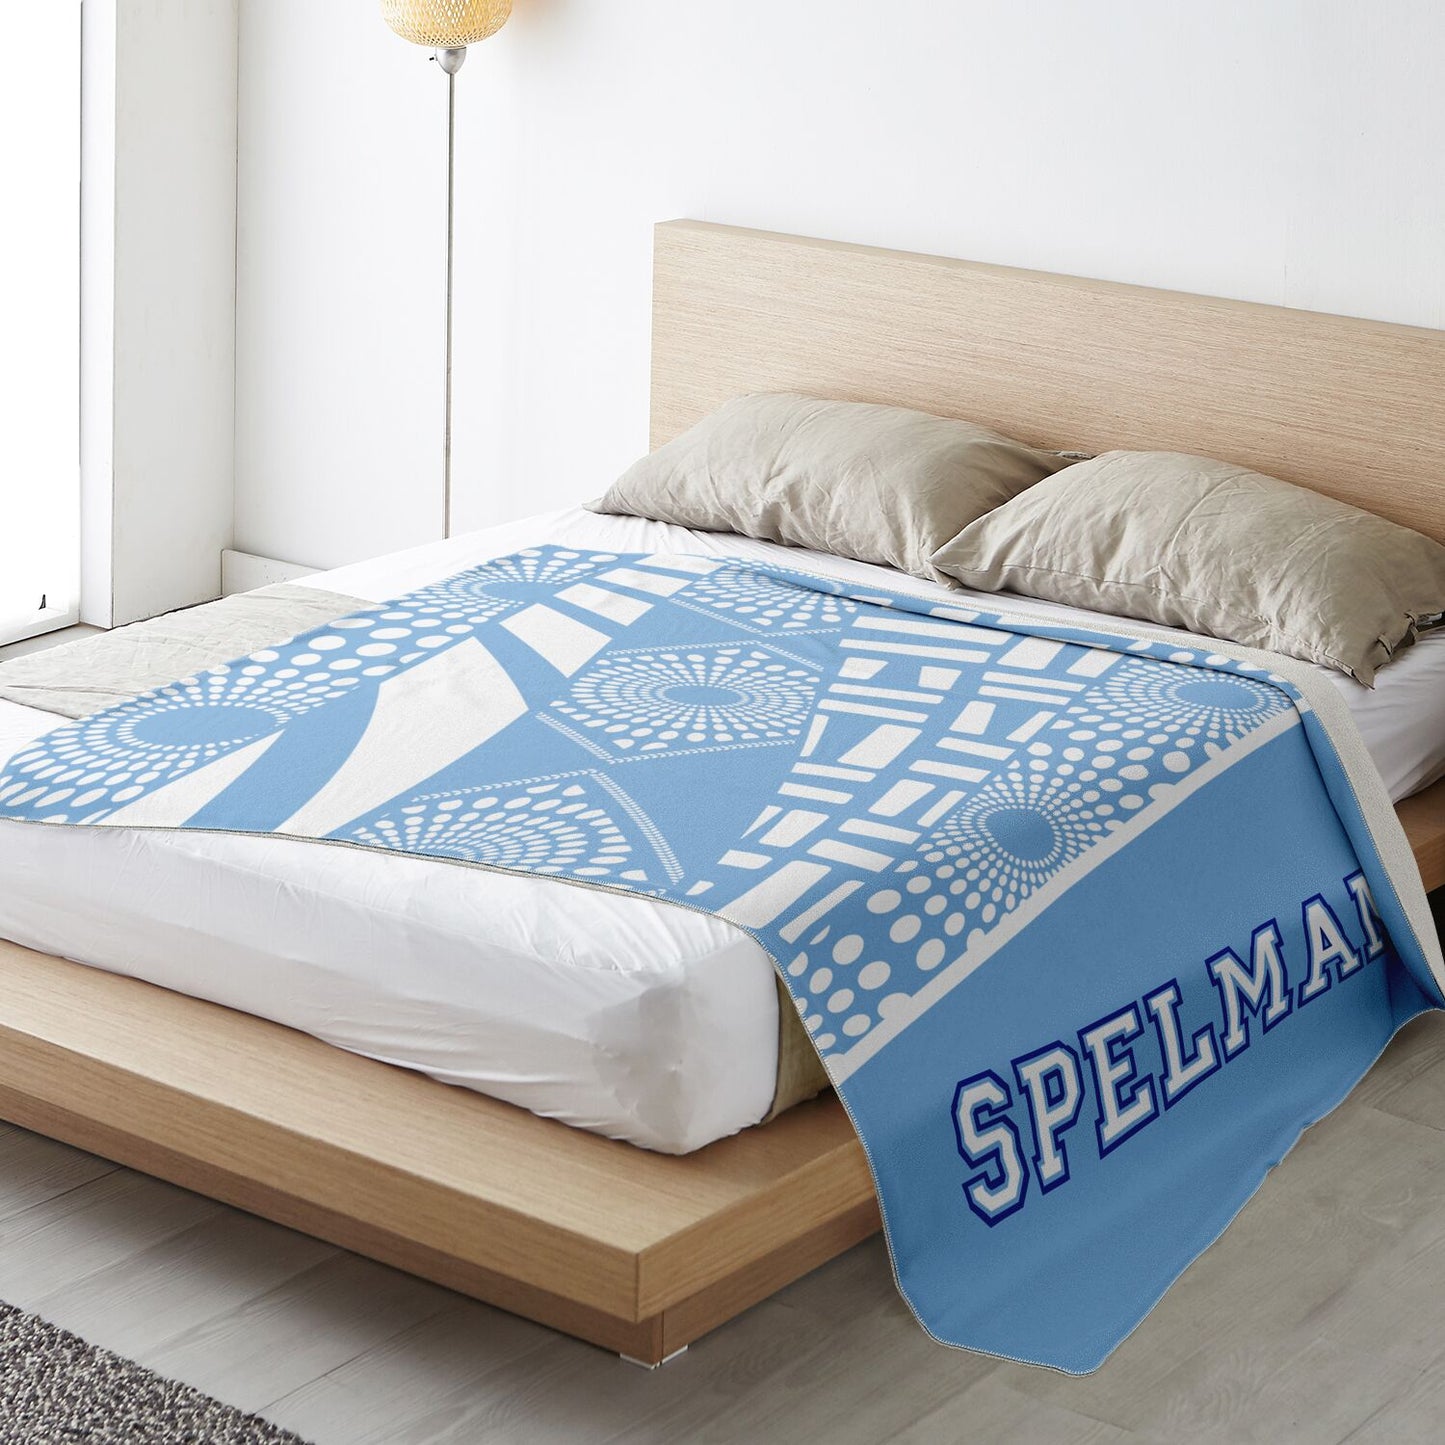 Spelman College Premium Microfleece Blanket